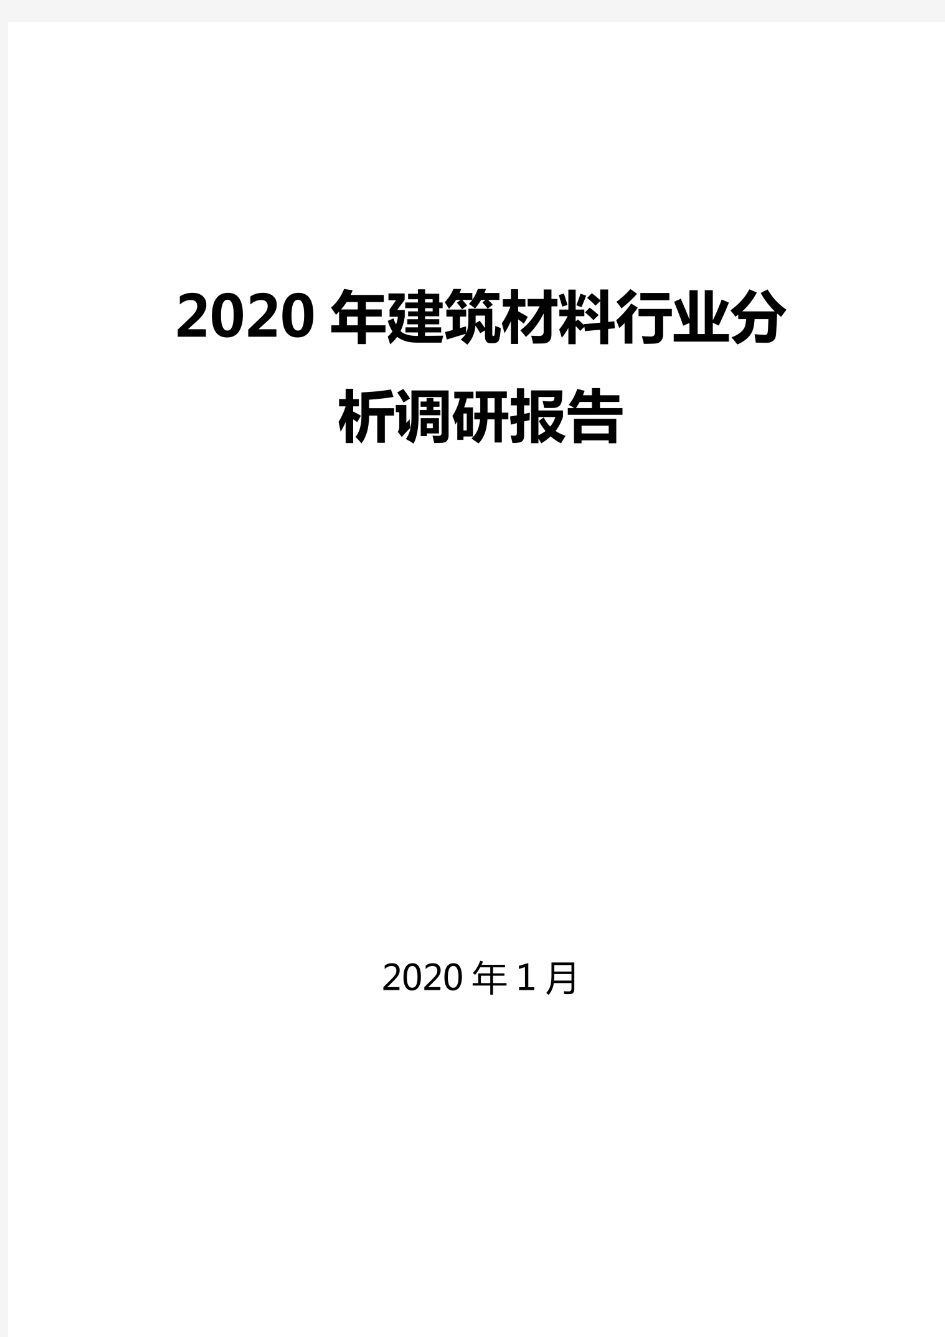 2020建筑材料行业分析报告